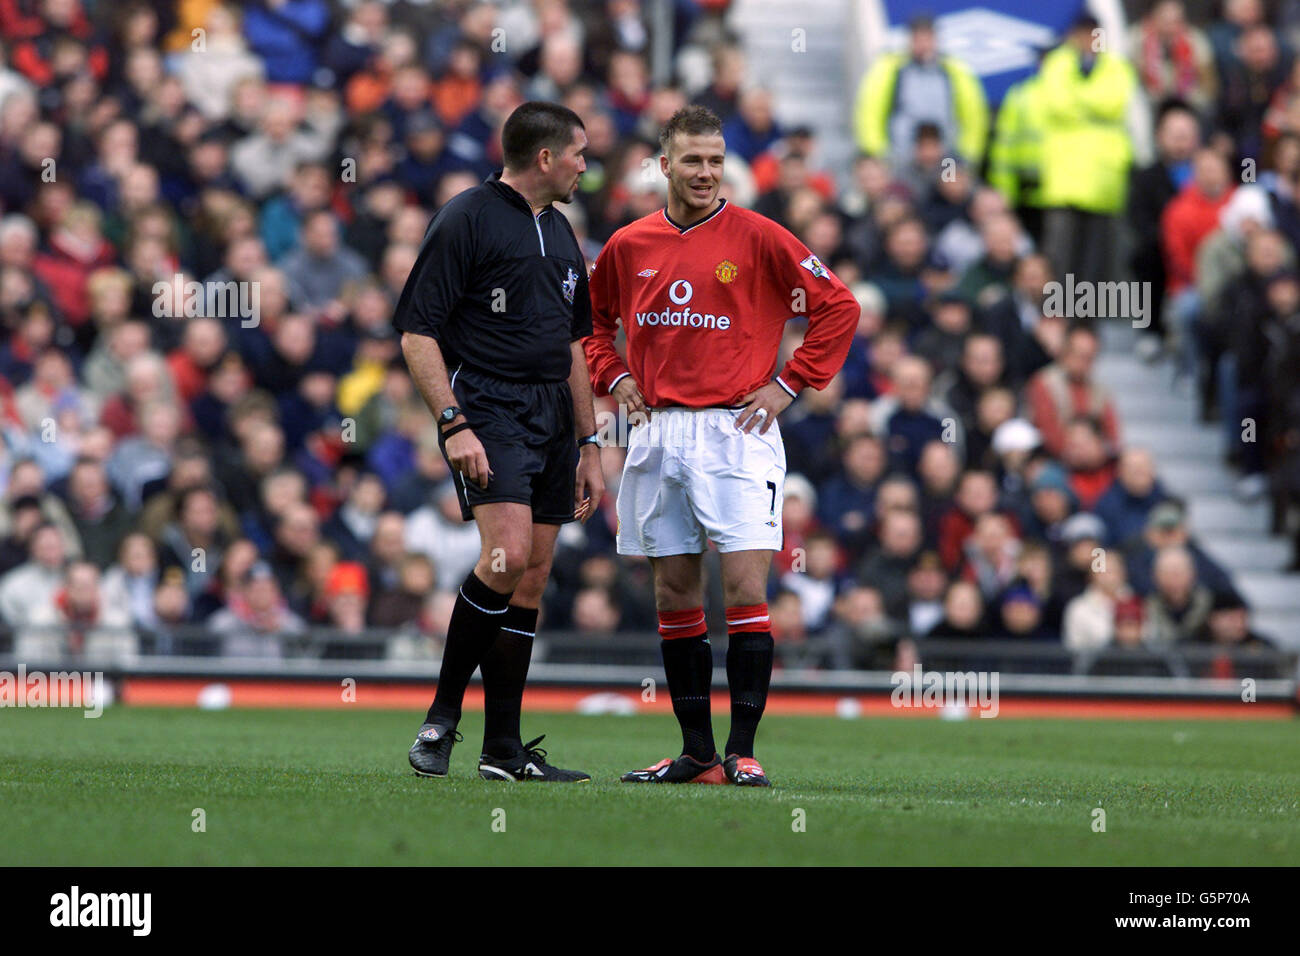 David Beckham de Manchester United et Jeff Winter, arbitre, en conversation, pendant la F.A. Barclaycard Premiership match contre Aston Villa à Old Trafford, Manchester. Banque D'Images